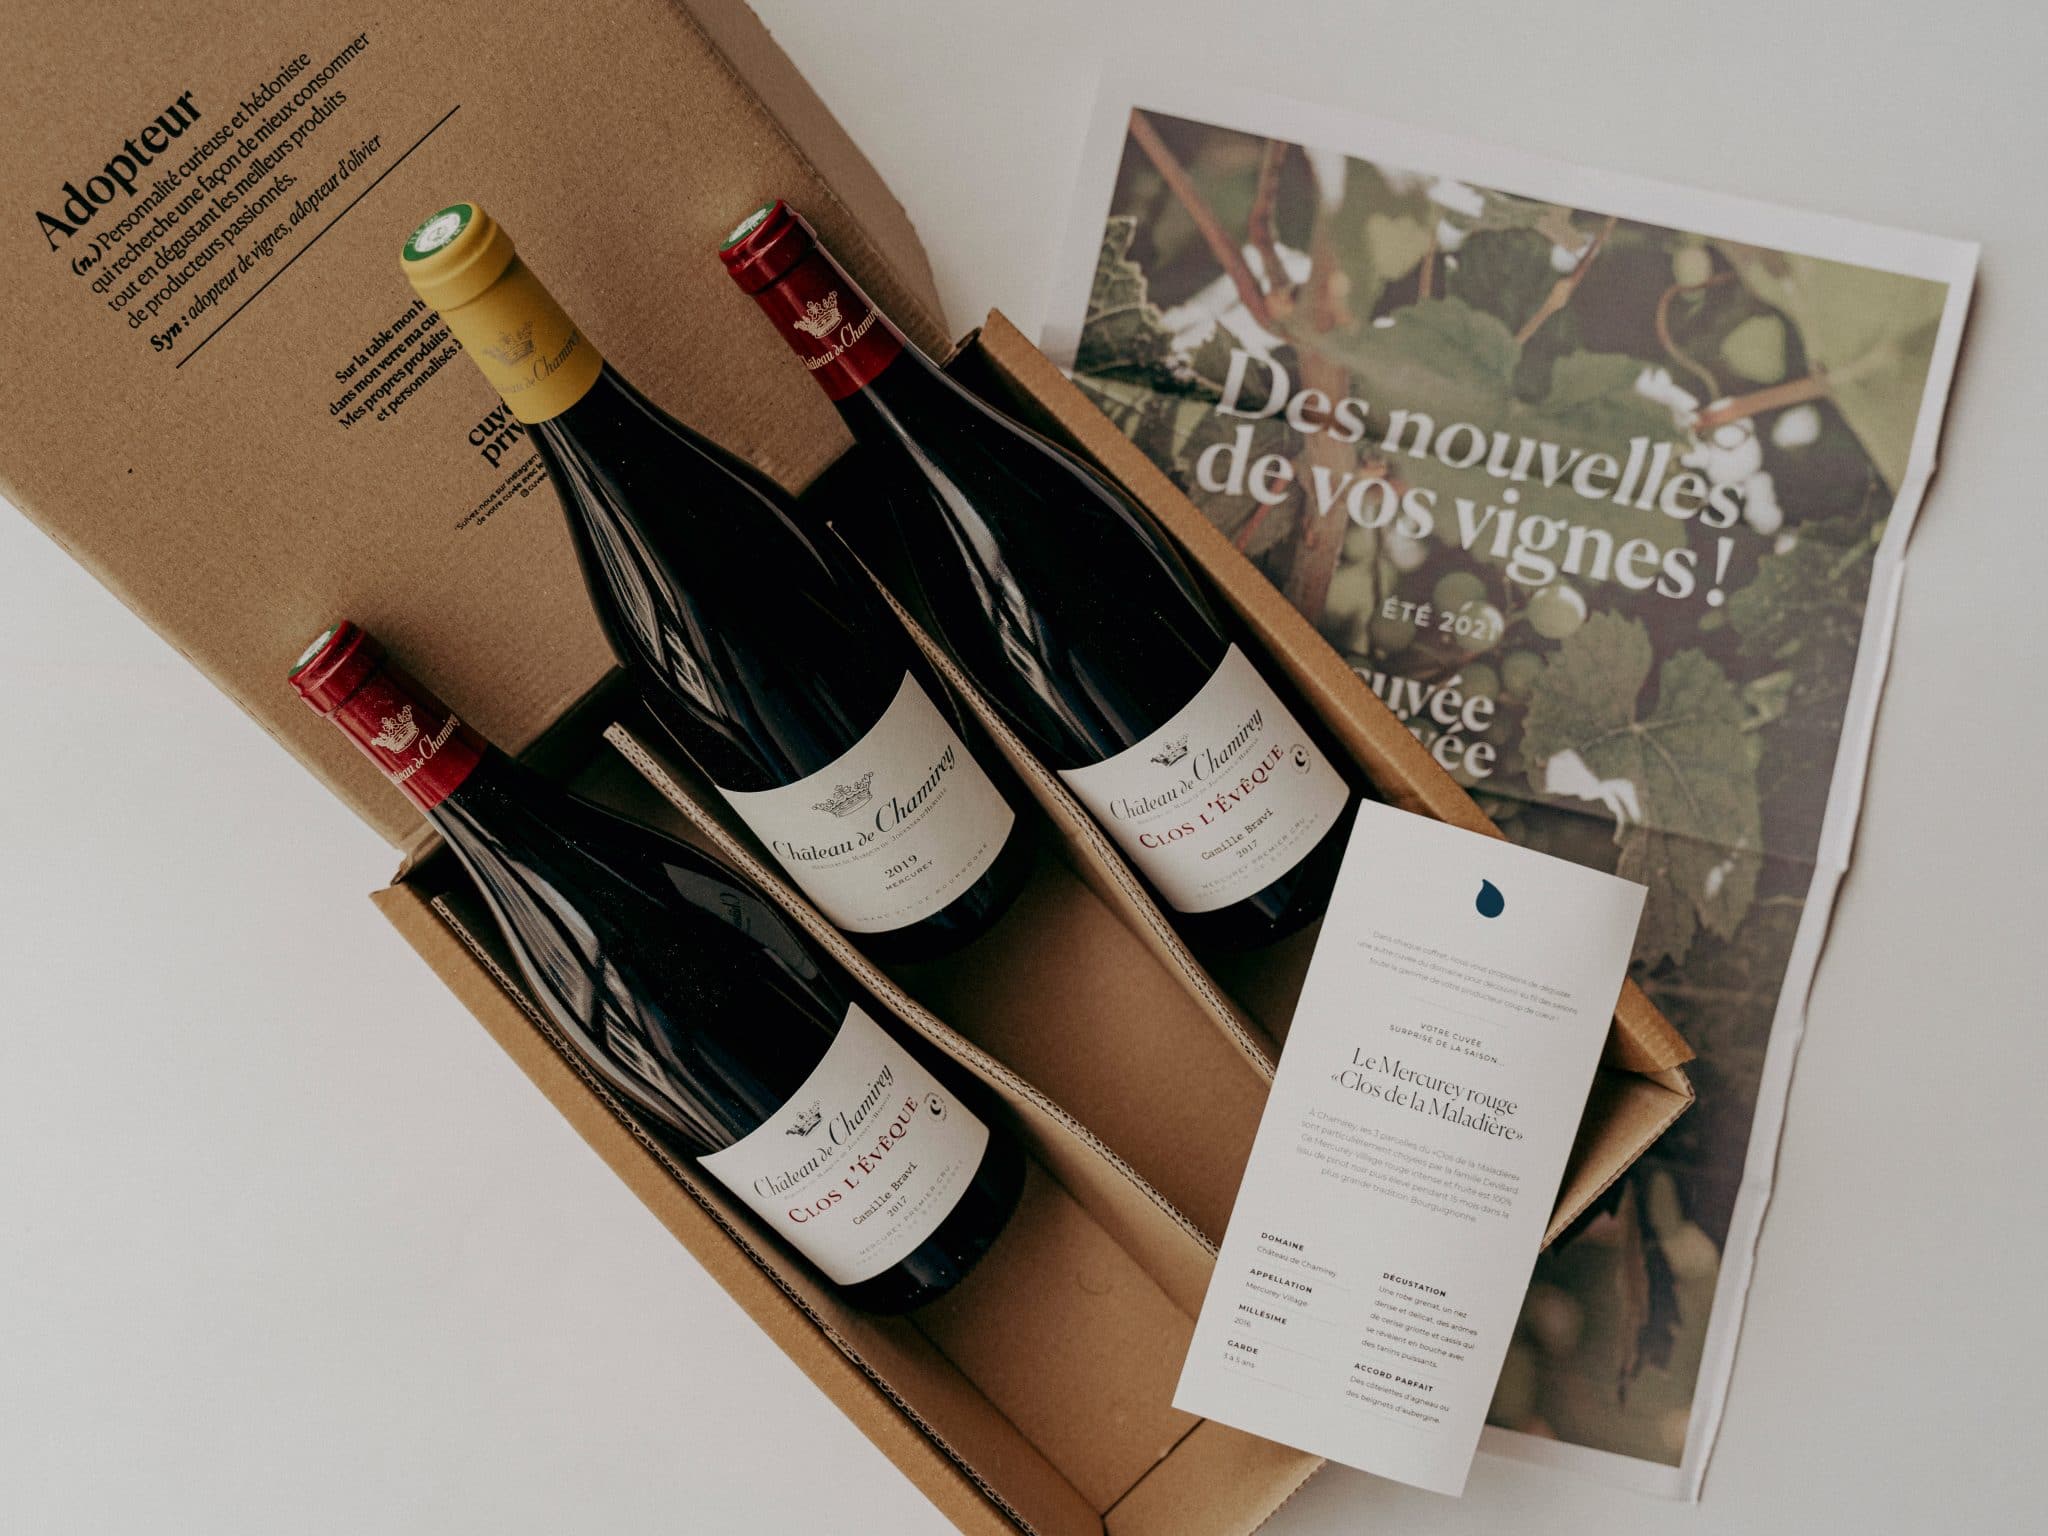 Cadeau original pour les amateurs de vin : offrir une parcelle de vignes